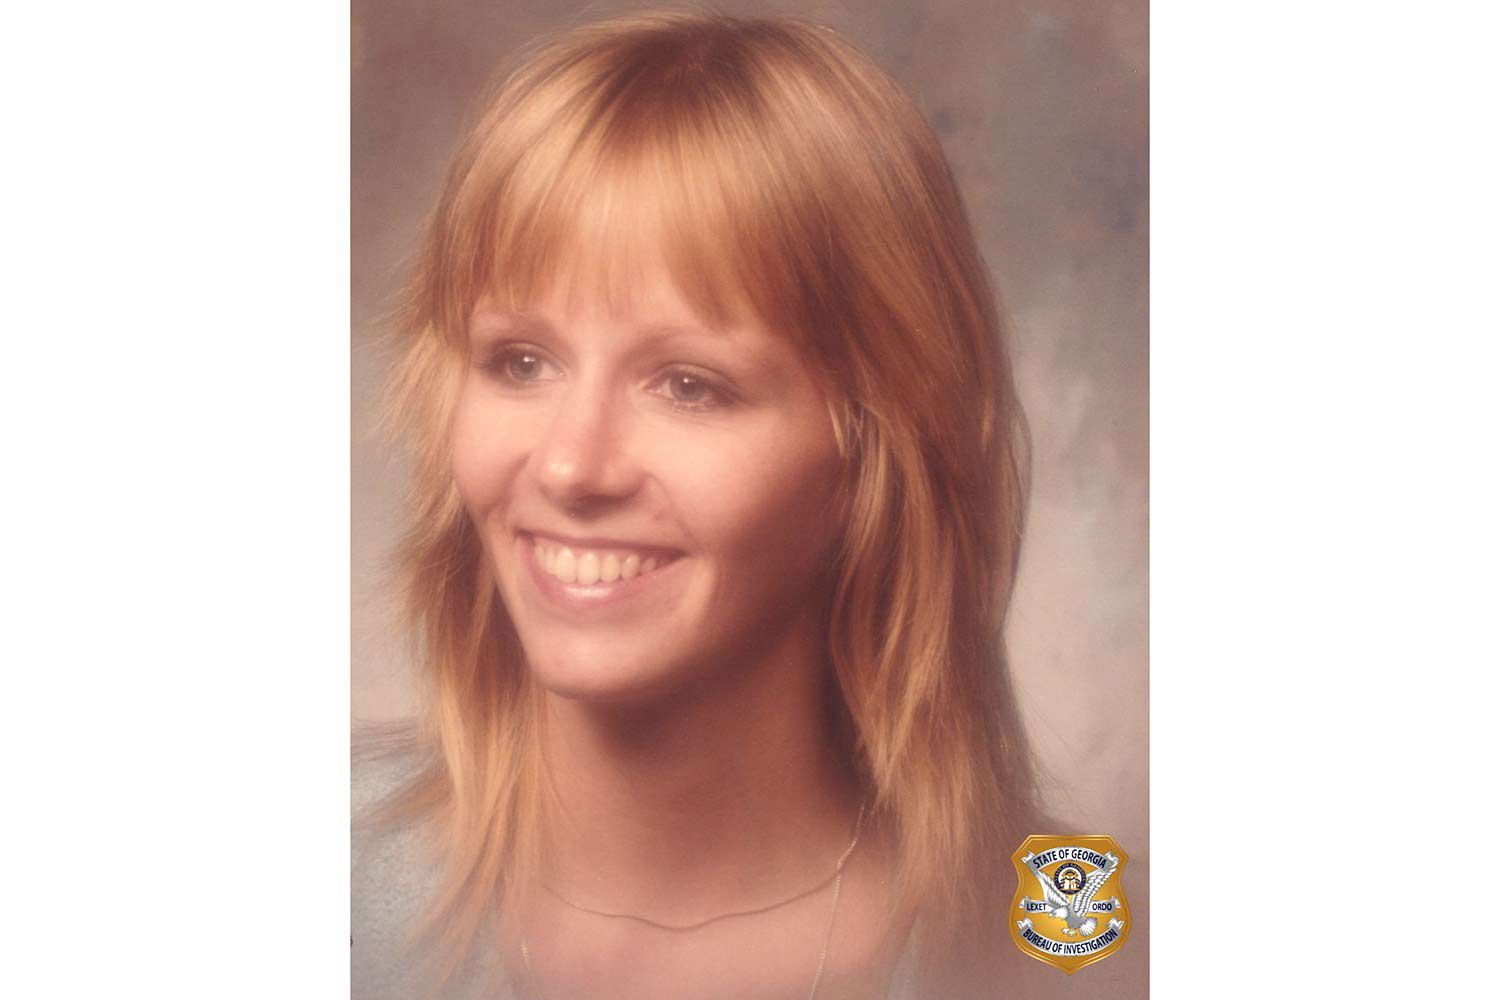 Frau, die vor 37 Jahren starb, nachdem sie bewusstlos auf dem Ga. Highway gefunden wurde, als vermisste Mutter von 4 identifiziert